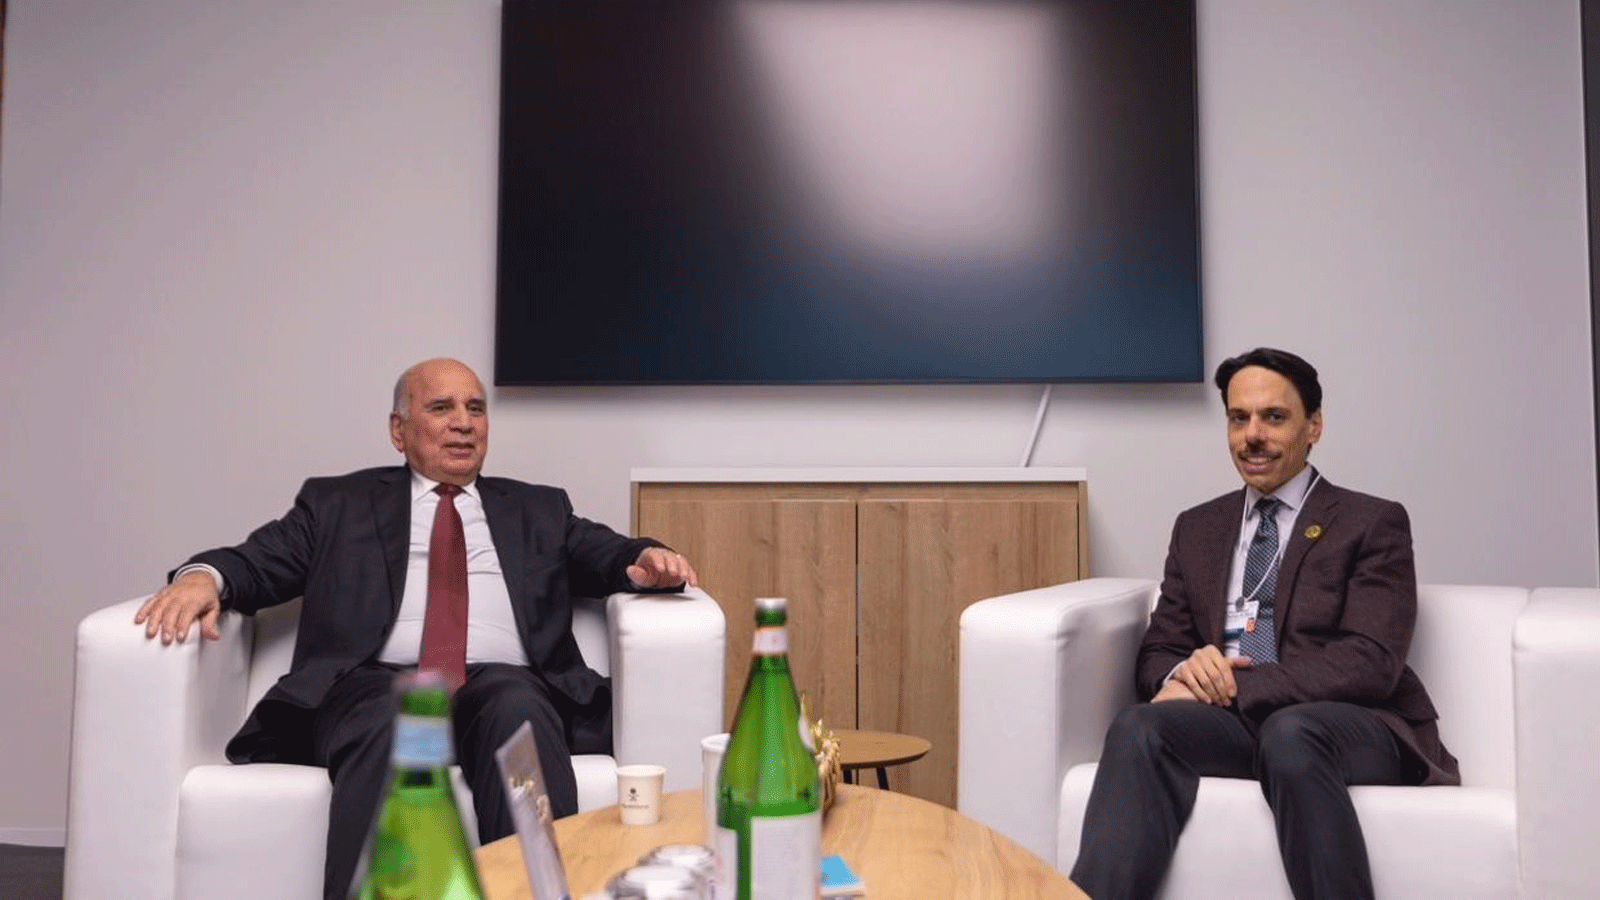 وزير الخارجية العراقي فؤاد حسين مجتمعا في لاهاي في 17 كانون الثاني\يناير 2023 مع نظيره السعودي الامير فيصل بن فرحان (مكتبه)